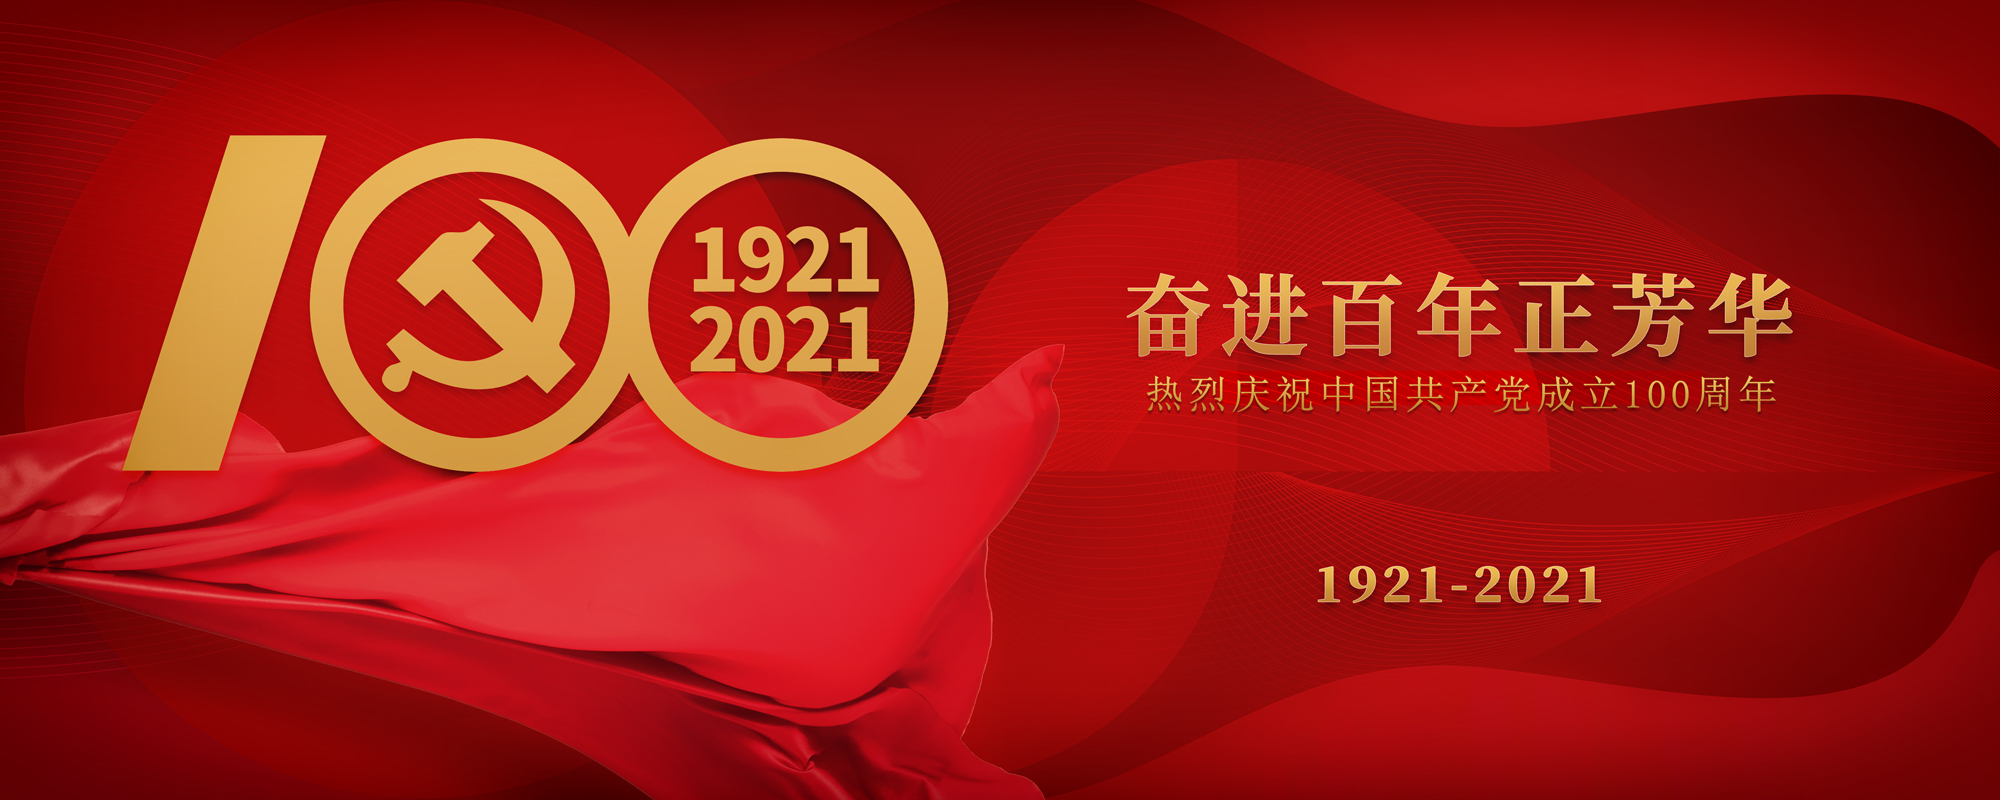 千亿国际体育祝贺建党100周年